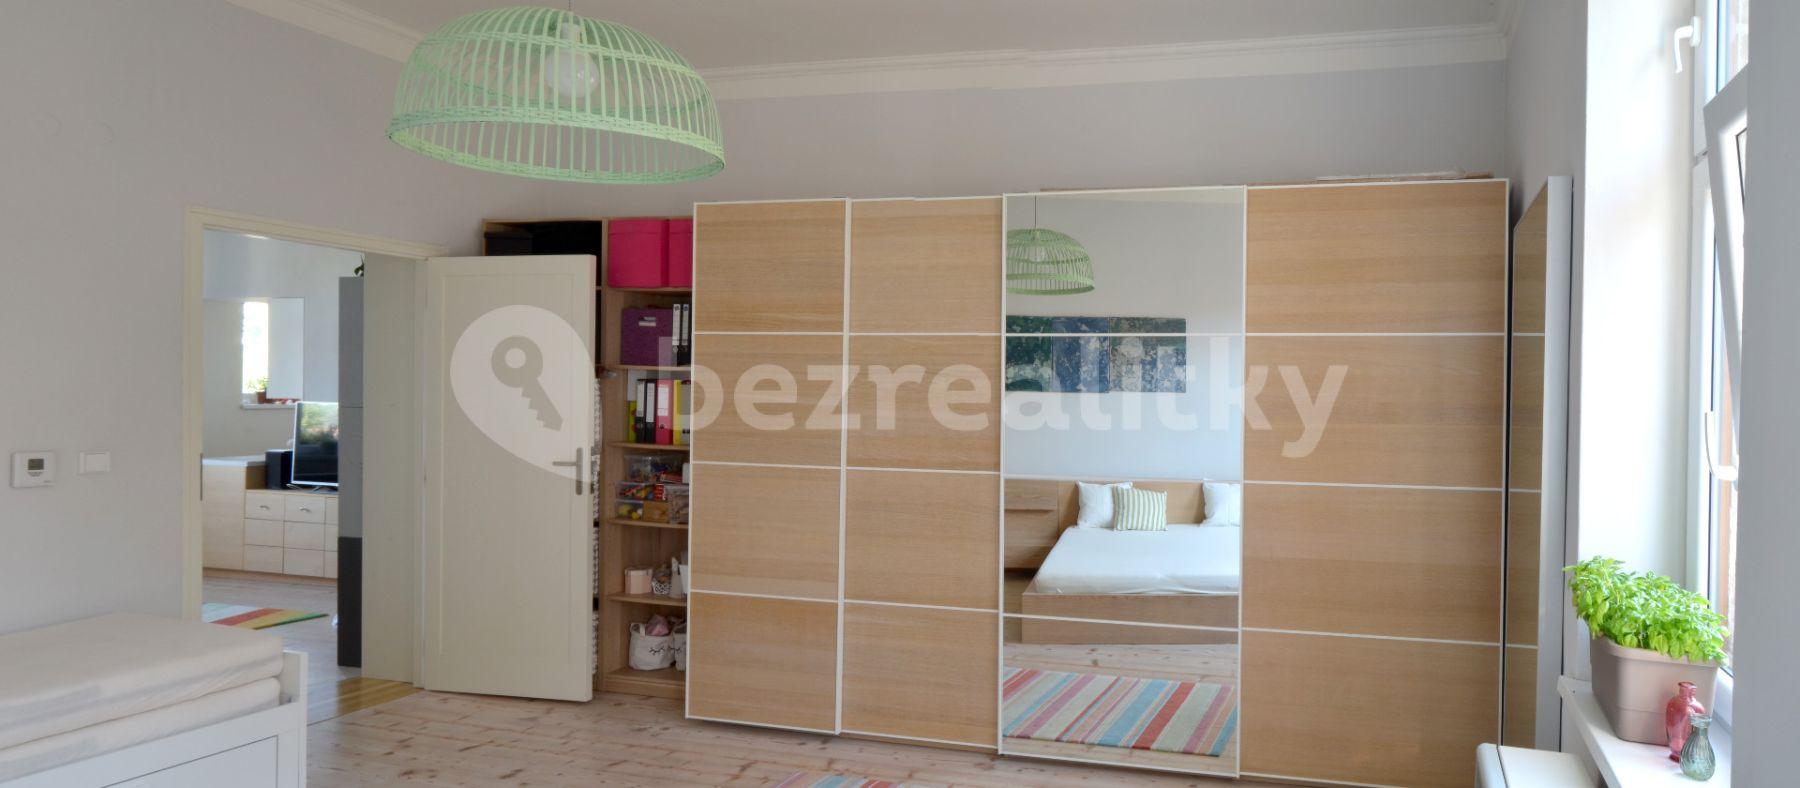 1 bedroom with open-plan kitchen flat for sale, 59 m², Zelená, Hradec Králové, Královéhradecký Region